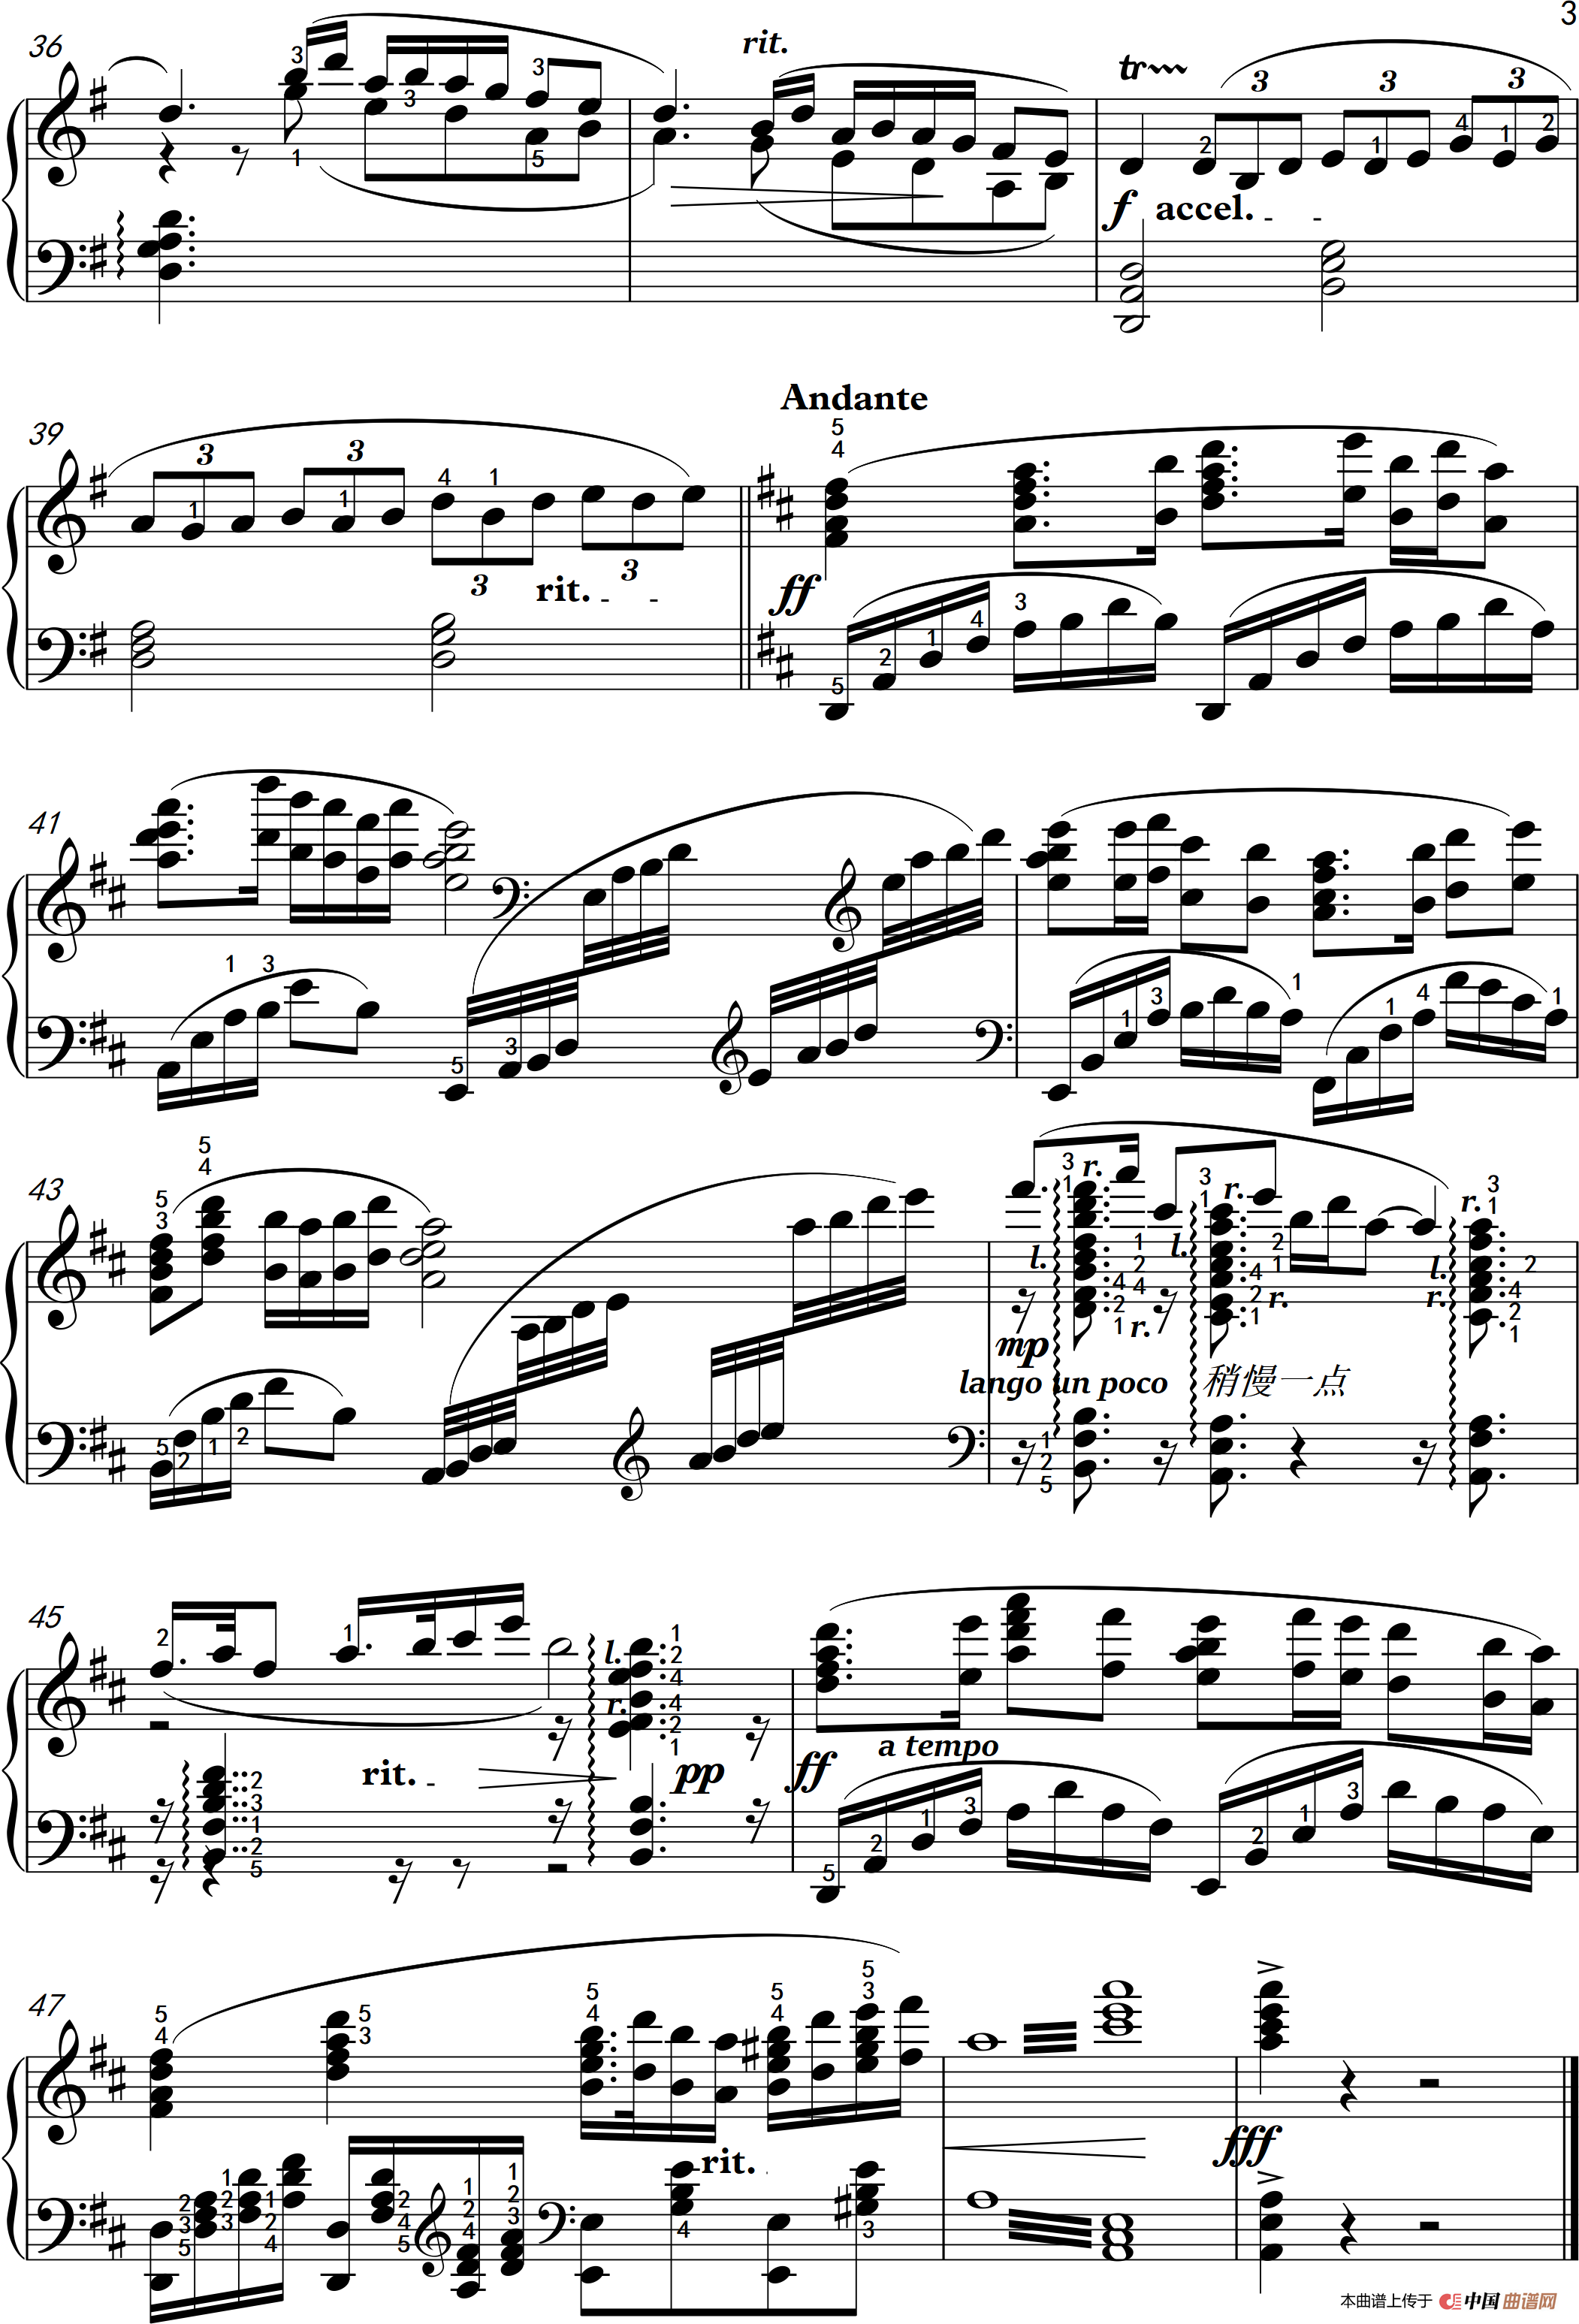 根据同名小提琴协奏曲《梁祝》片段而改编的钢琴曲,难易程度